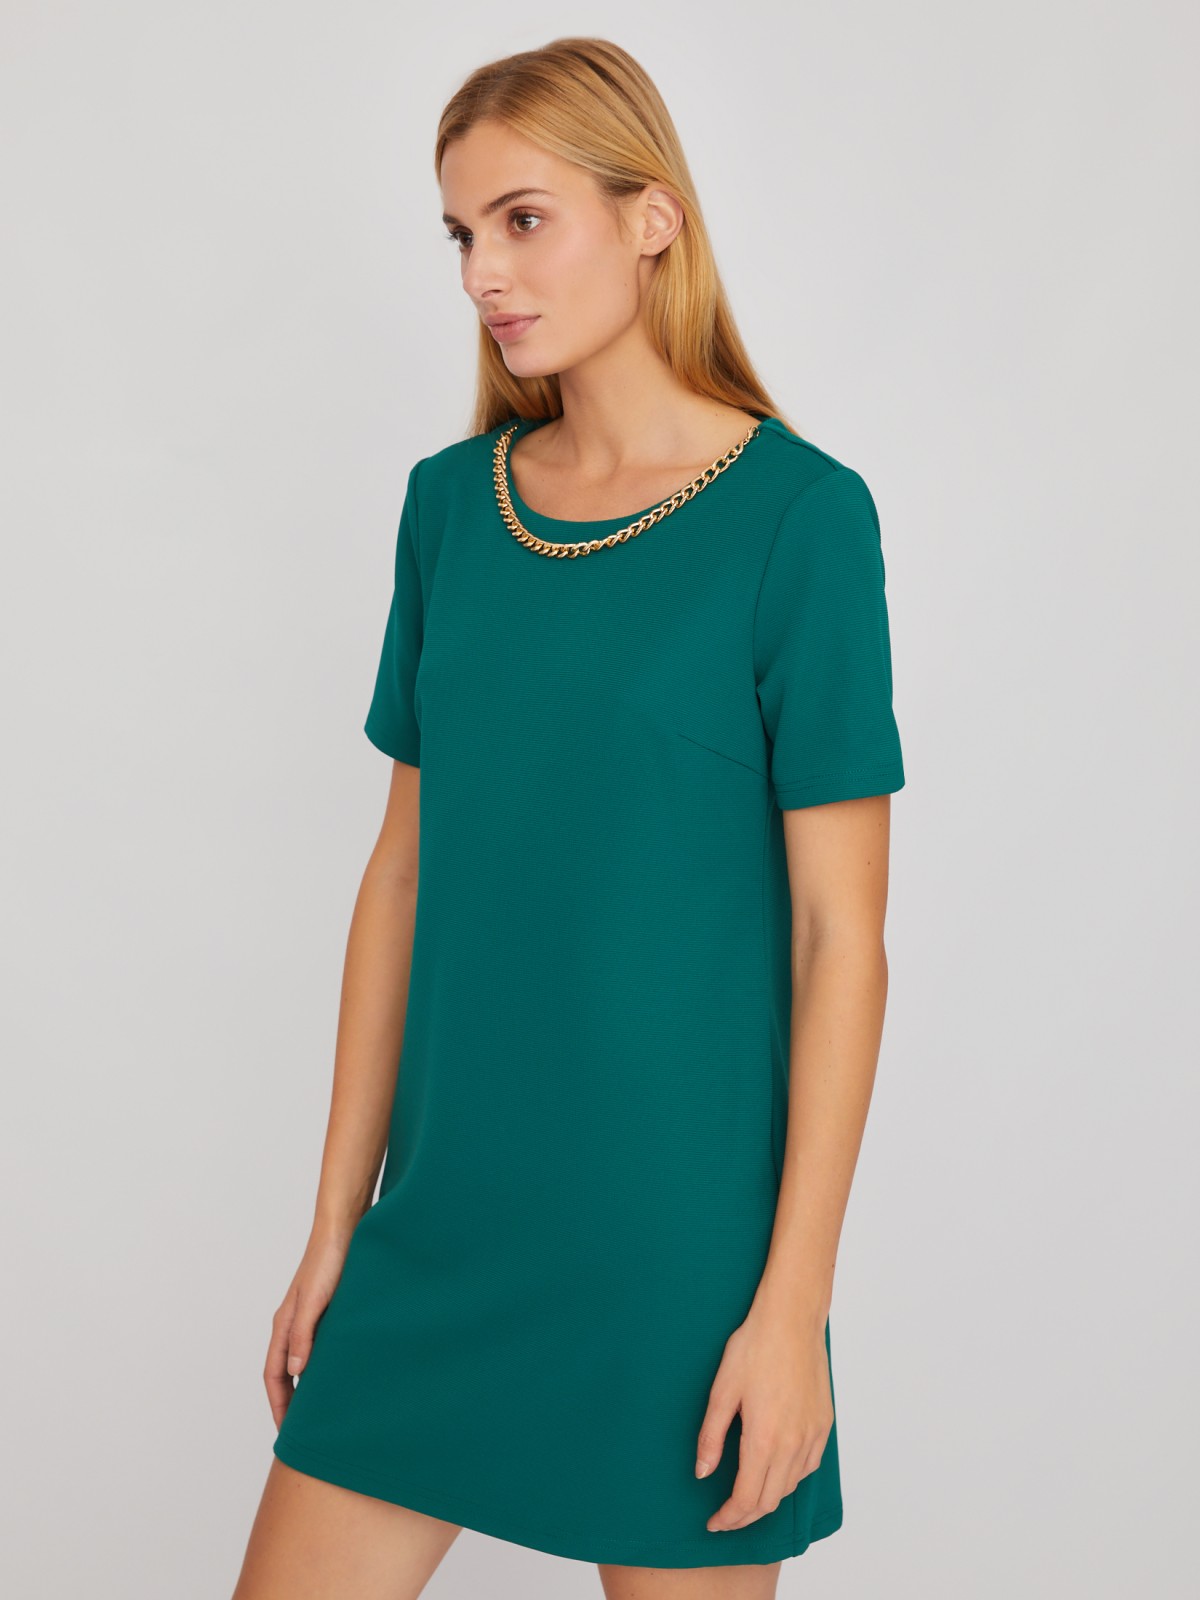 Платье длины мини с коротким рукавом и декоративной цепочкой zolla 02411819F472, цвет темно-зеленый, размер M - фото 3